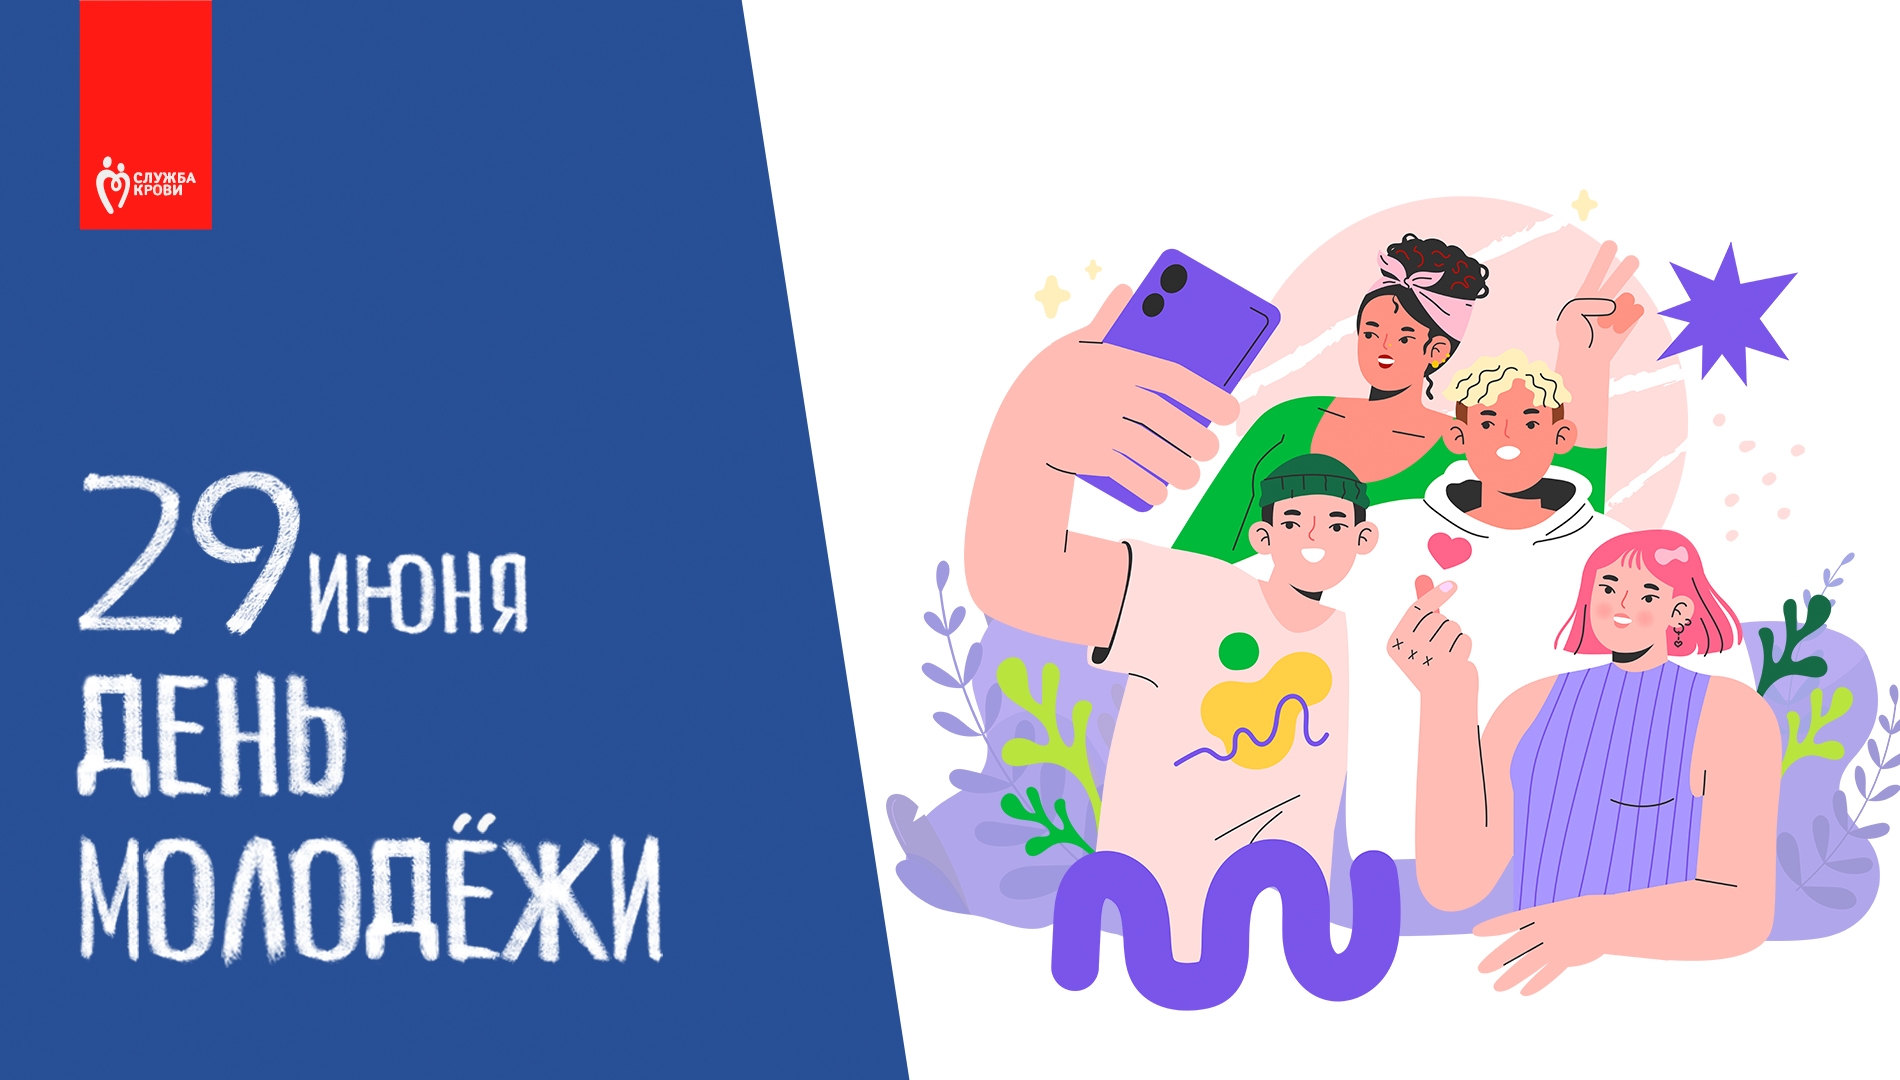 29 июня- День молодёжи в России!